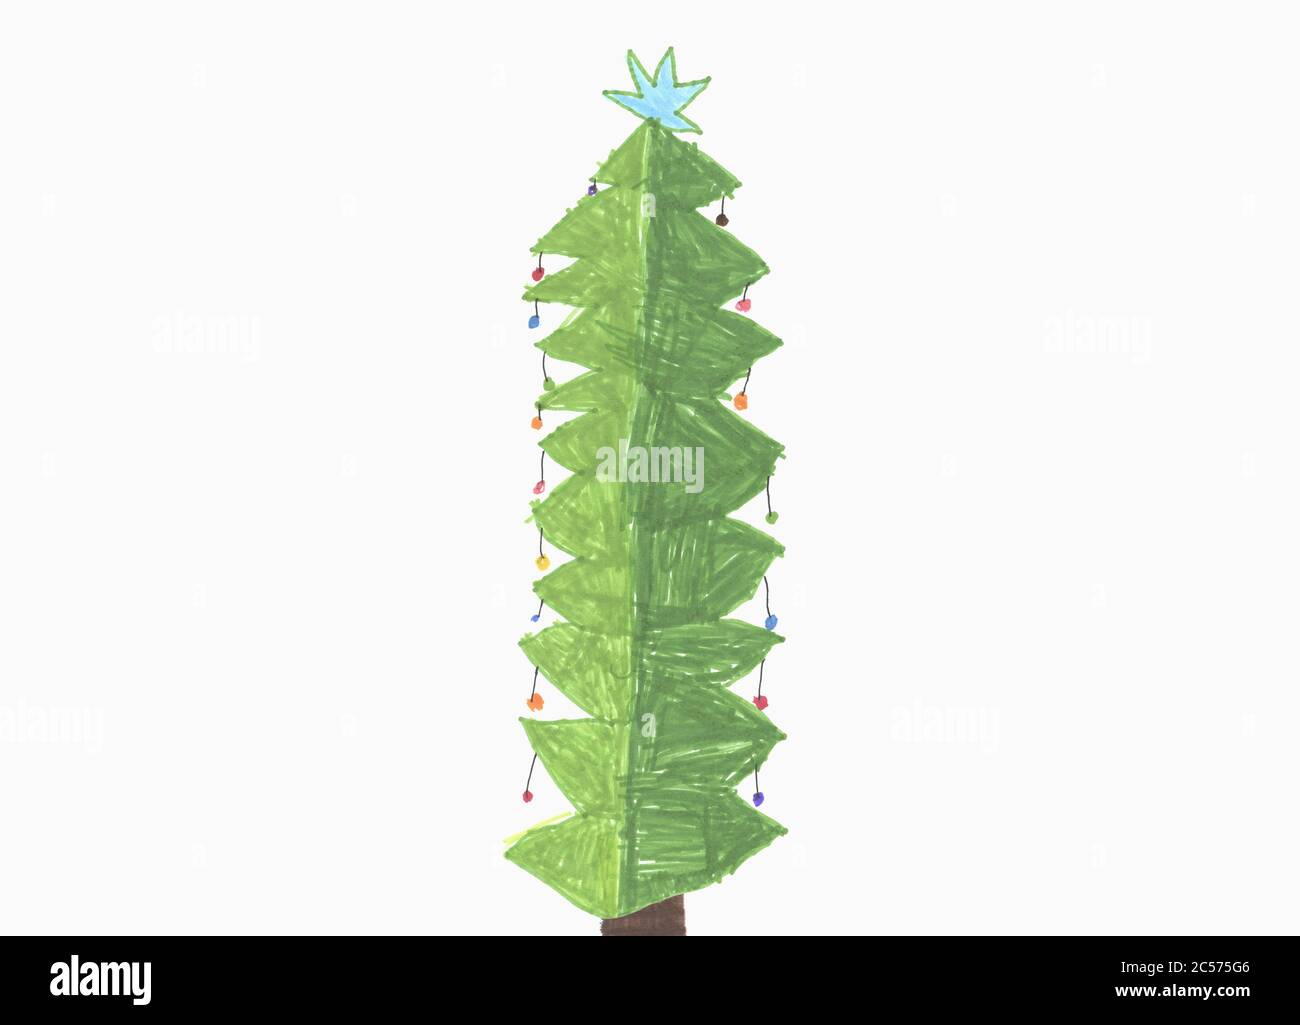 Childs Zeichnung geschmückt Weihnachtsbaum mit Stern auf weißem Hintergrund Stockfoto